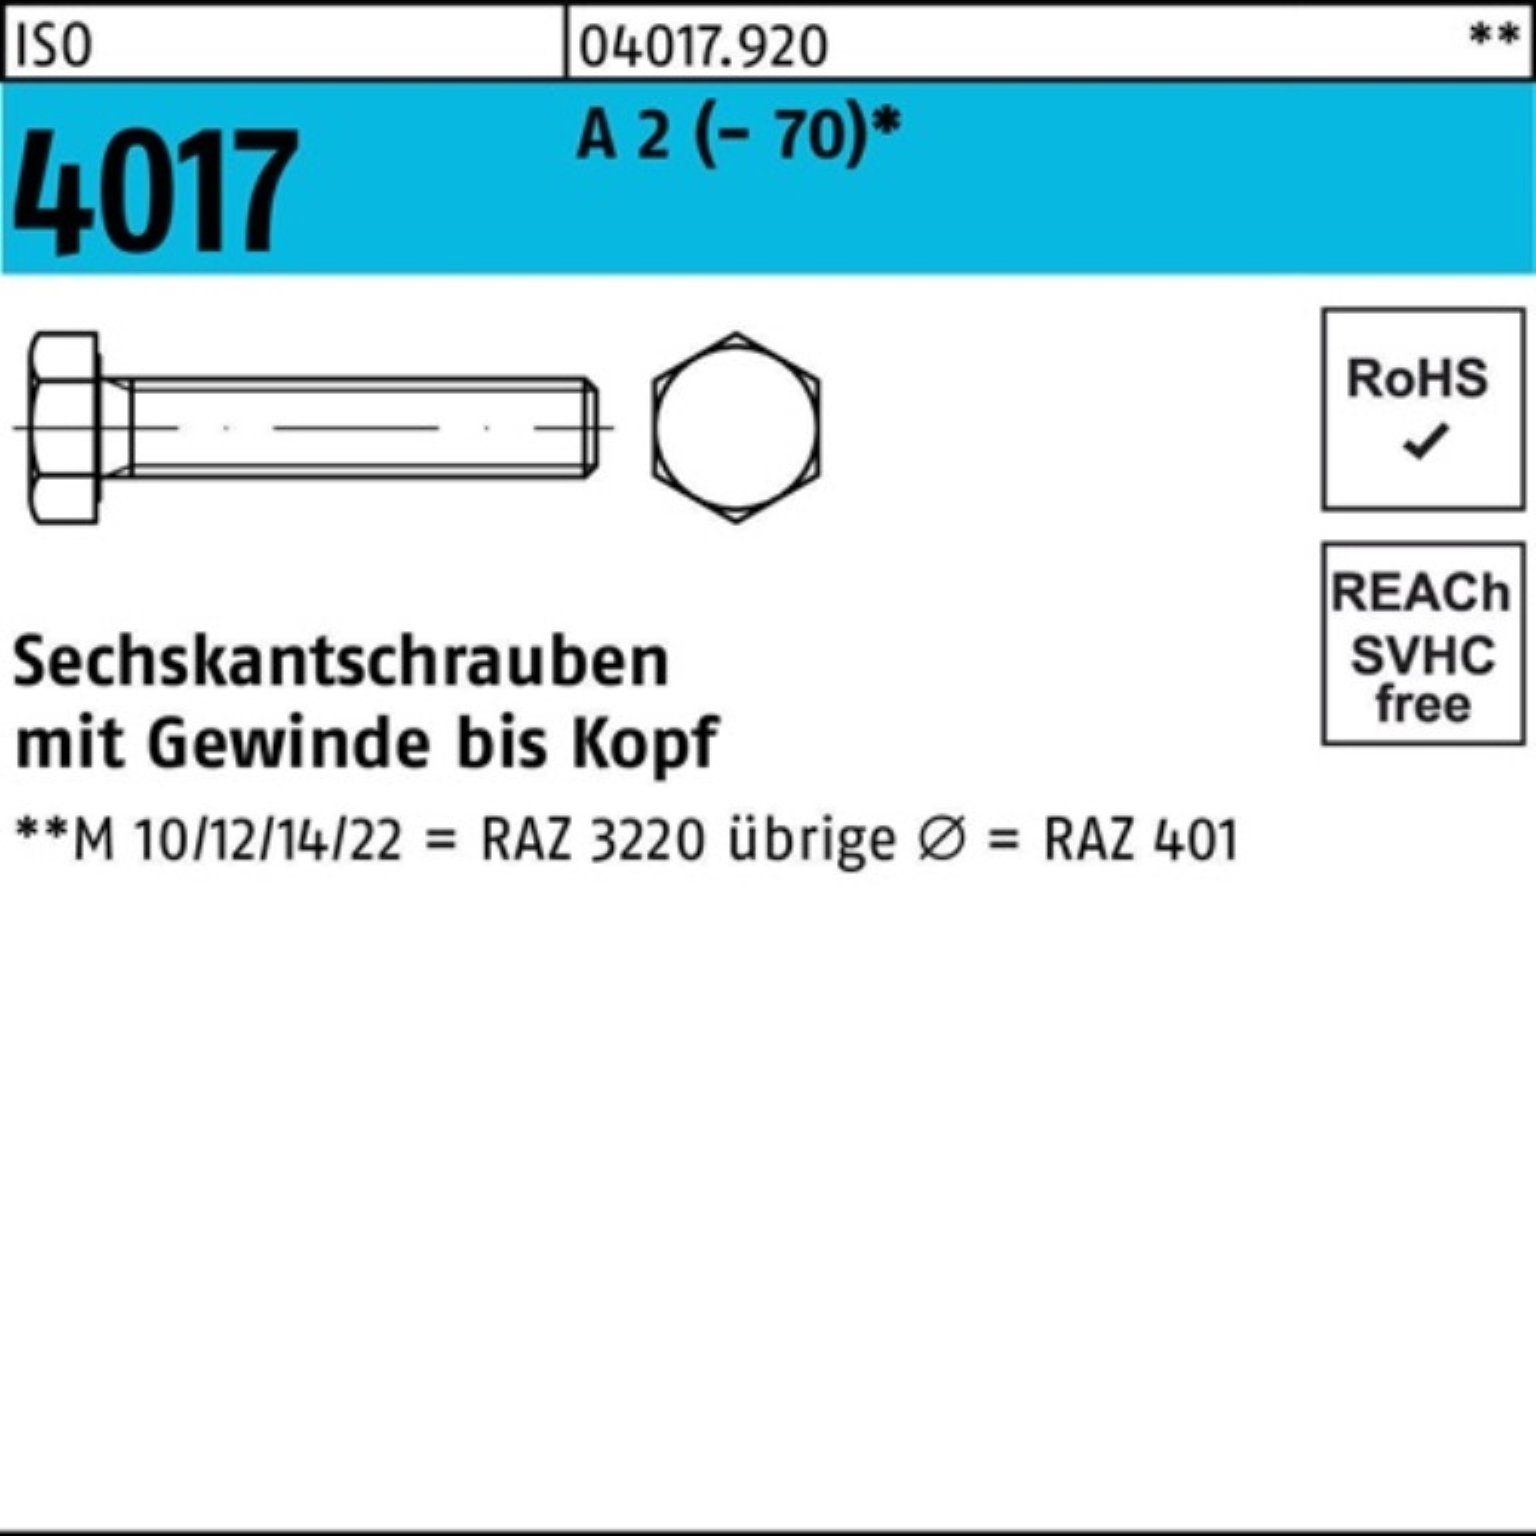 Bufab Sechskantschraube 100er Pack Sechskantschraube ISO 4017 VG M22x 100 A 2 (70) 10 Stück